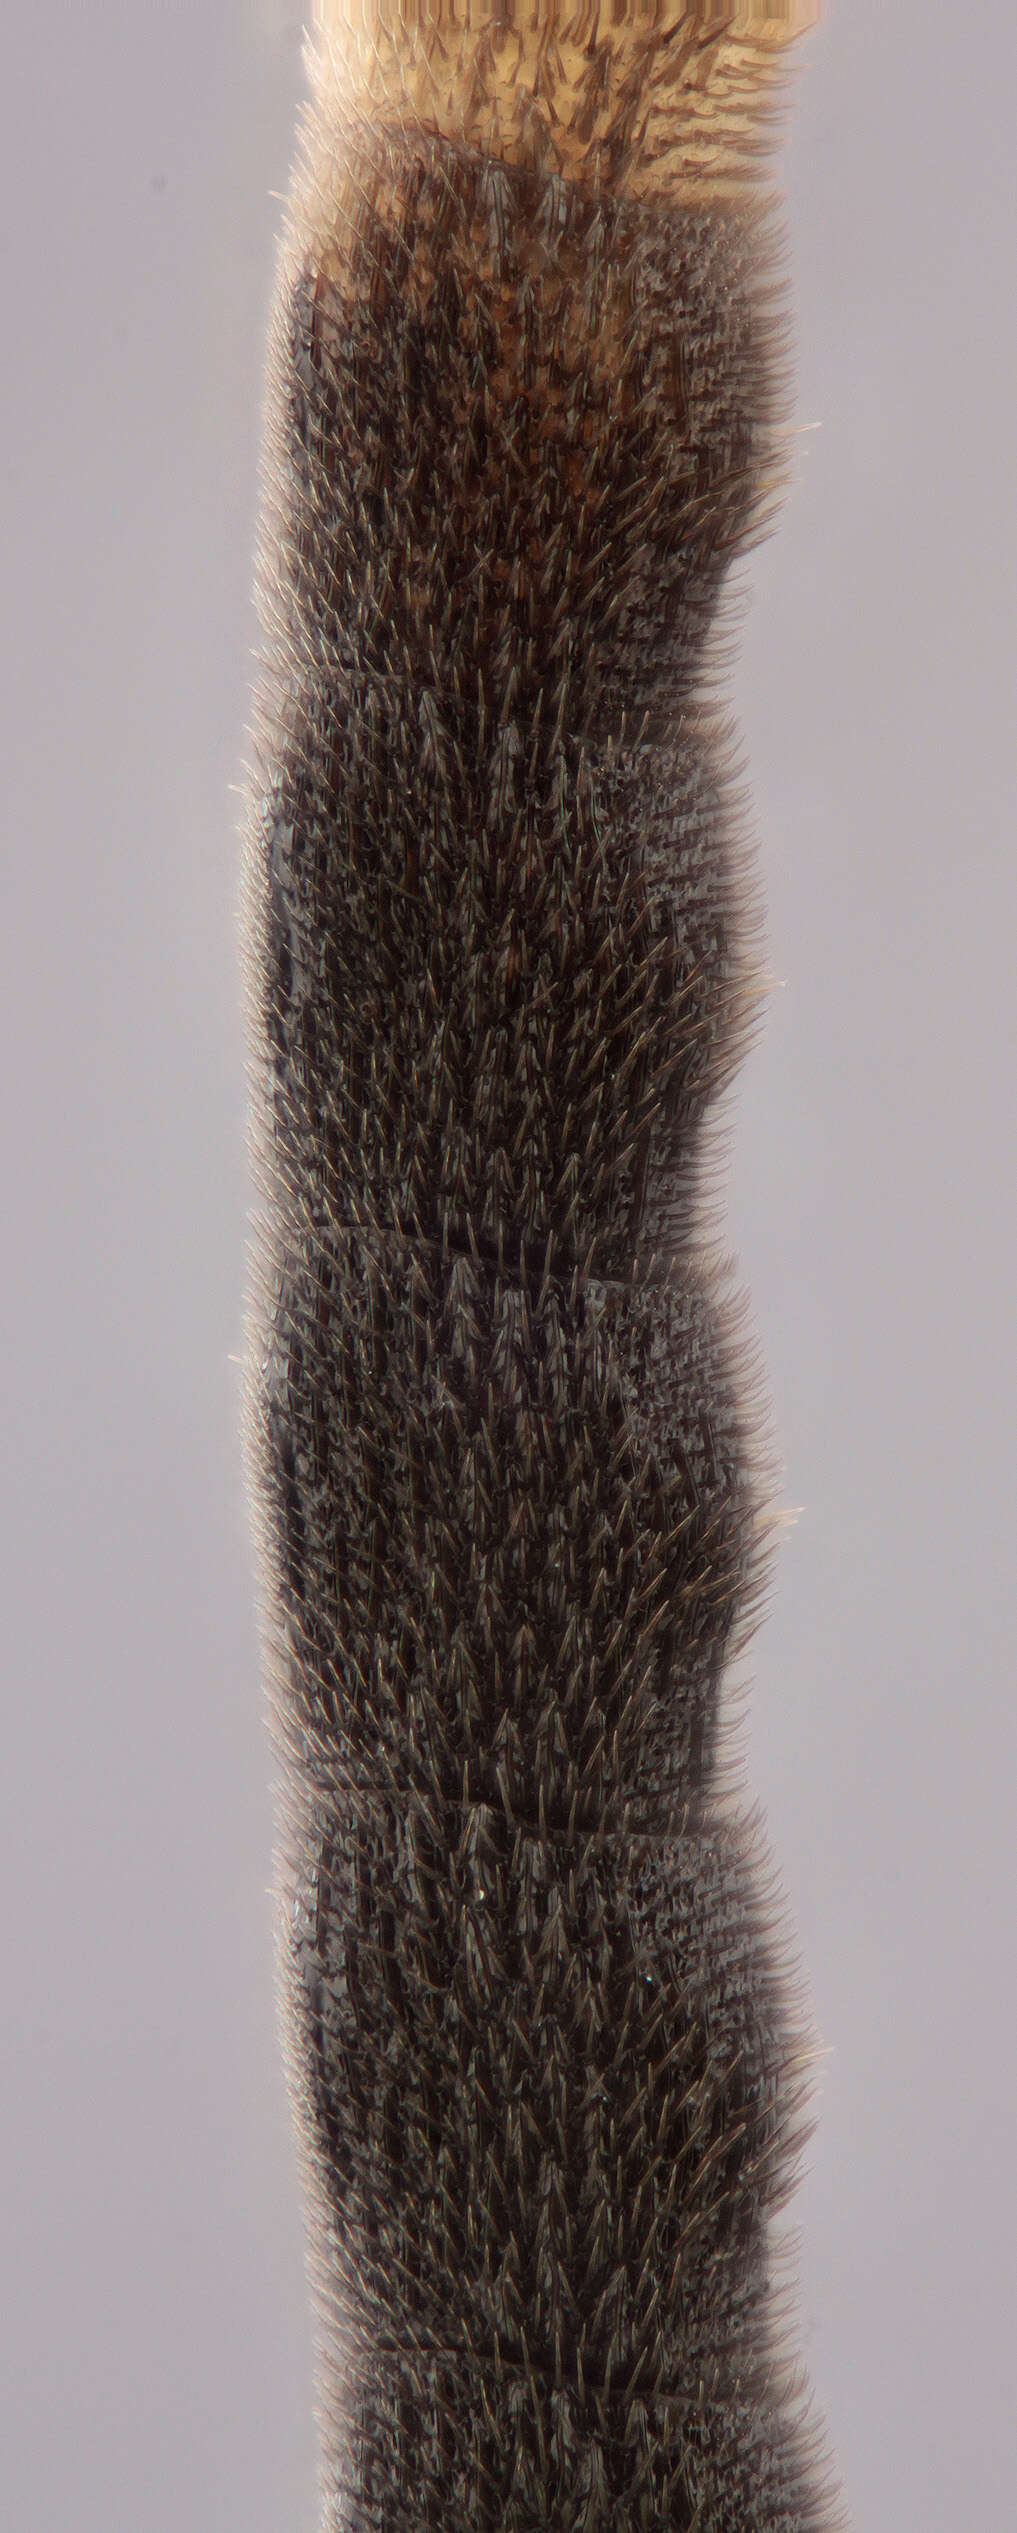 Image of Crypteffigies albilarvatus (Gravenhorst 1820)